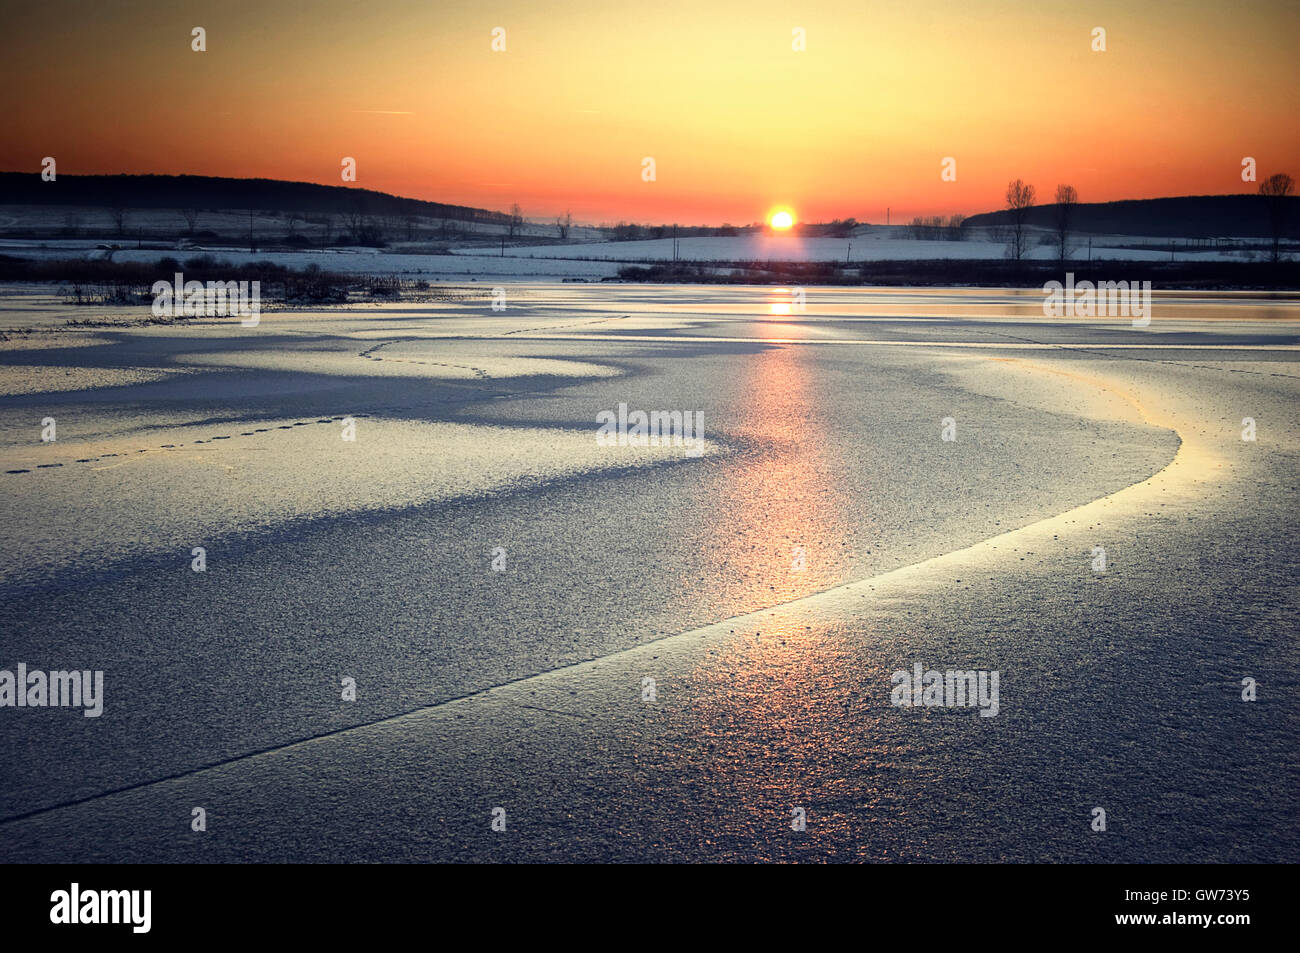 vivid sunset on frozen lake Stock Photo